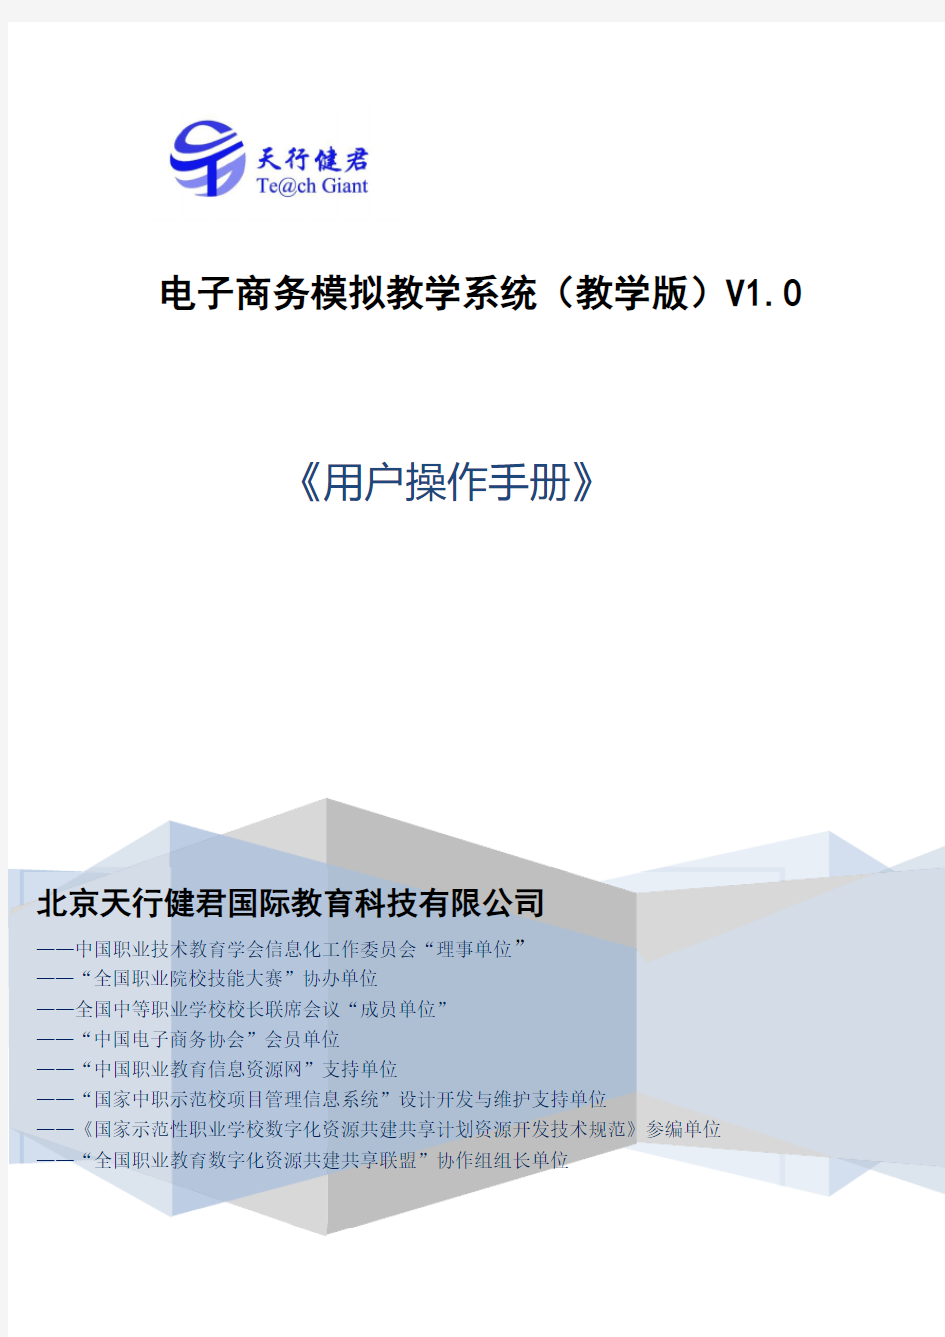 电子商务模拟教学系统(教学版)V1.0用户操作手册